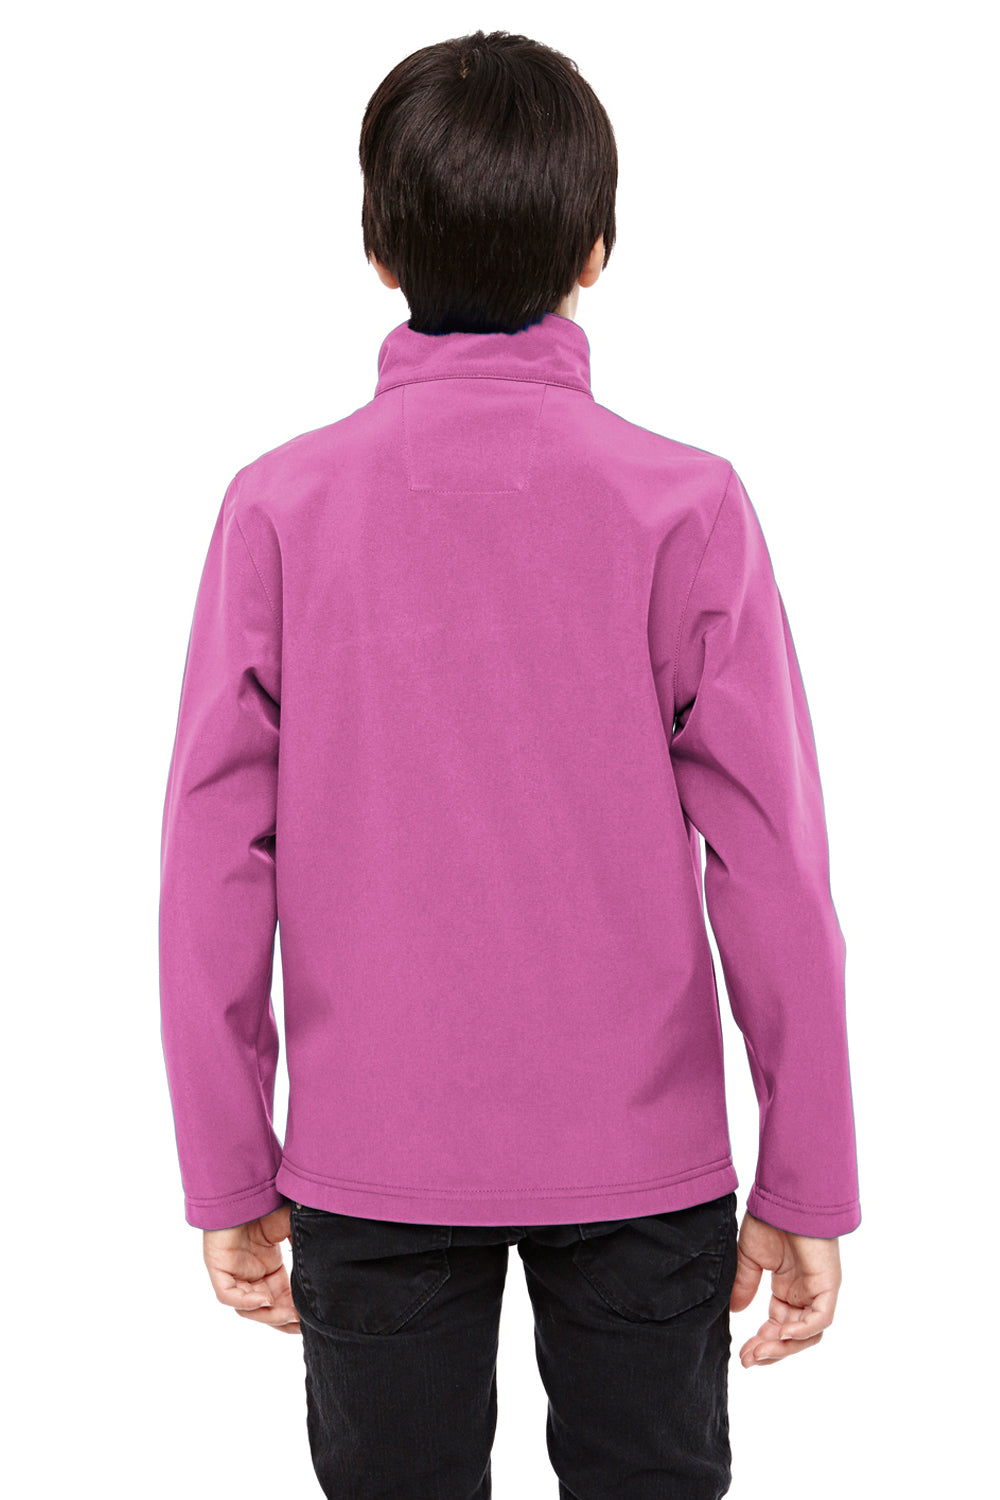 Team 365 TT80Y Youth Leader Waterproof Full Zip Jacket Charity Pink Back